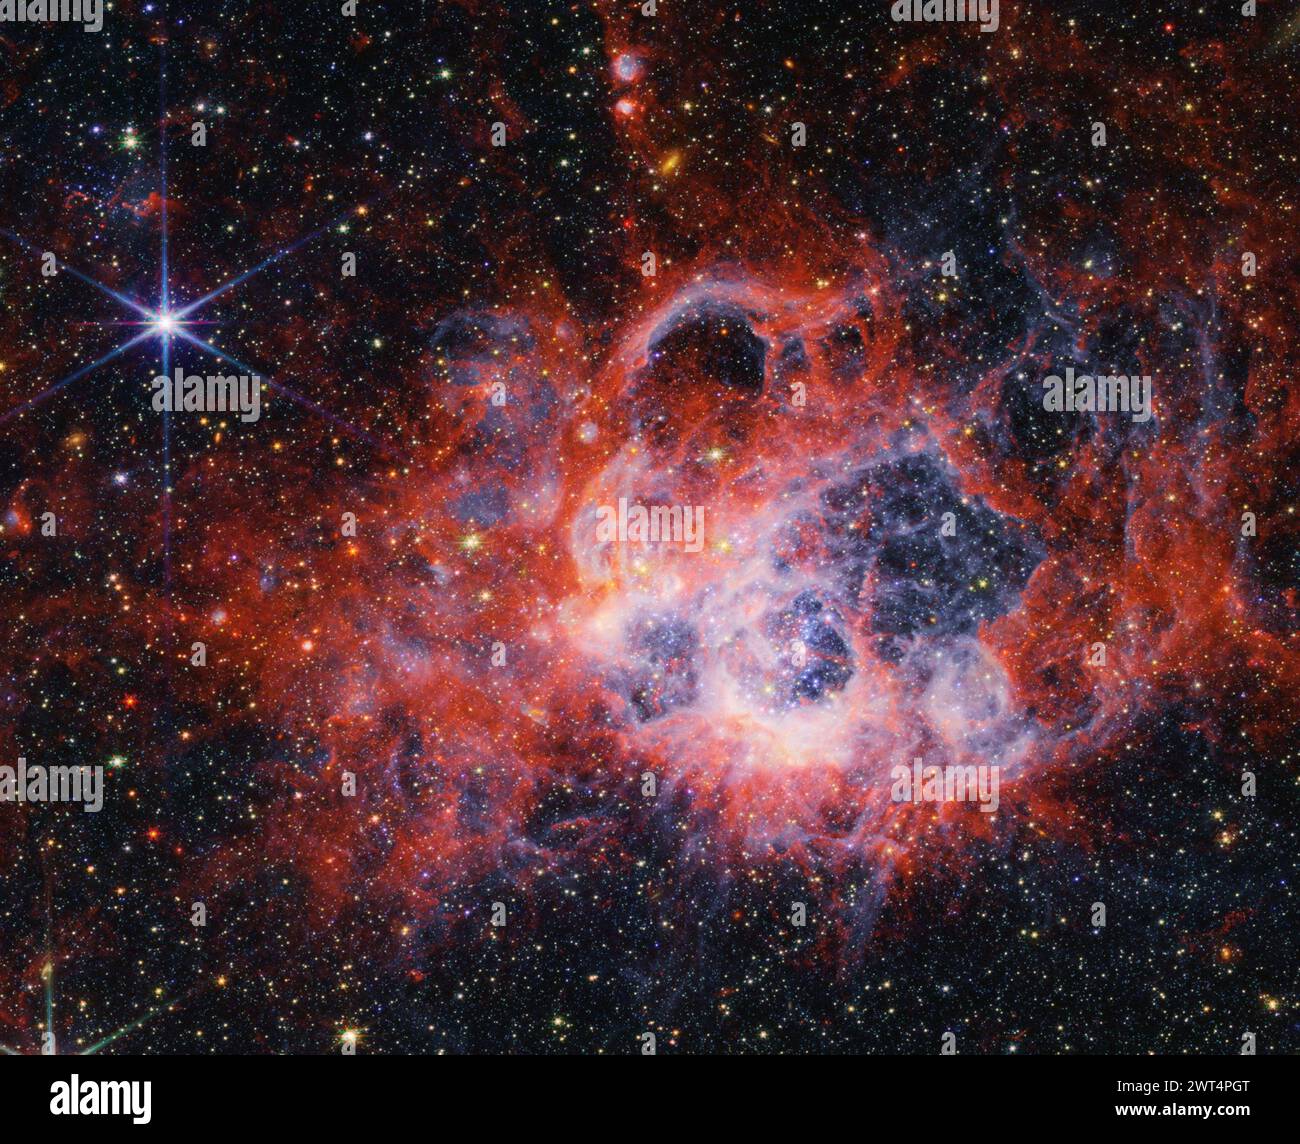 Cette image, publiée le lundi 11 mars 2024, de la NIRCam (Near-Infrared Camera) du télescope spatial James Webb de la NASA de la région de formation des étoiles NGC 604 montre comment les vents stellaires de jeunes étoiles brillantes et chaudes creusent des cavités dans le gaz et la poussière environnants. NGC 604 est situé dans la galaxie du Triangulum (M33), à 2,73 millions d'années-lumière de la Terre. Il permet aux astronomes d'étudier une forte concentration d'étoiles massives très jeunes dans une région voisine. CRÉDIT : NASA, ESA, CSA, STSCI Banque D'Images